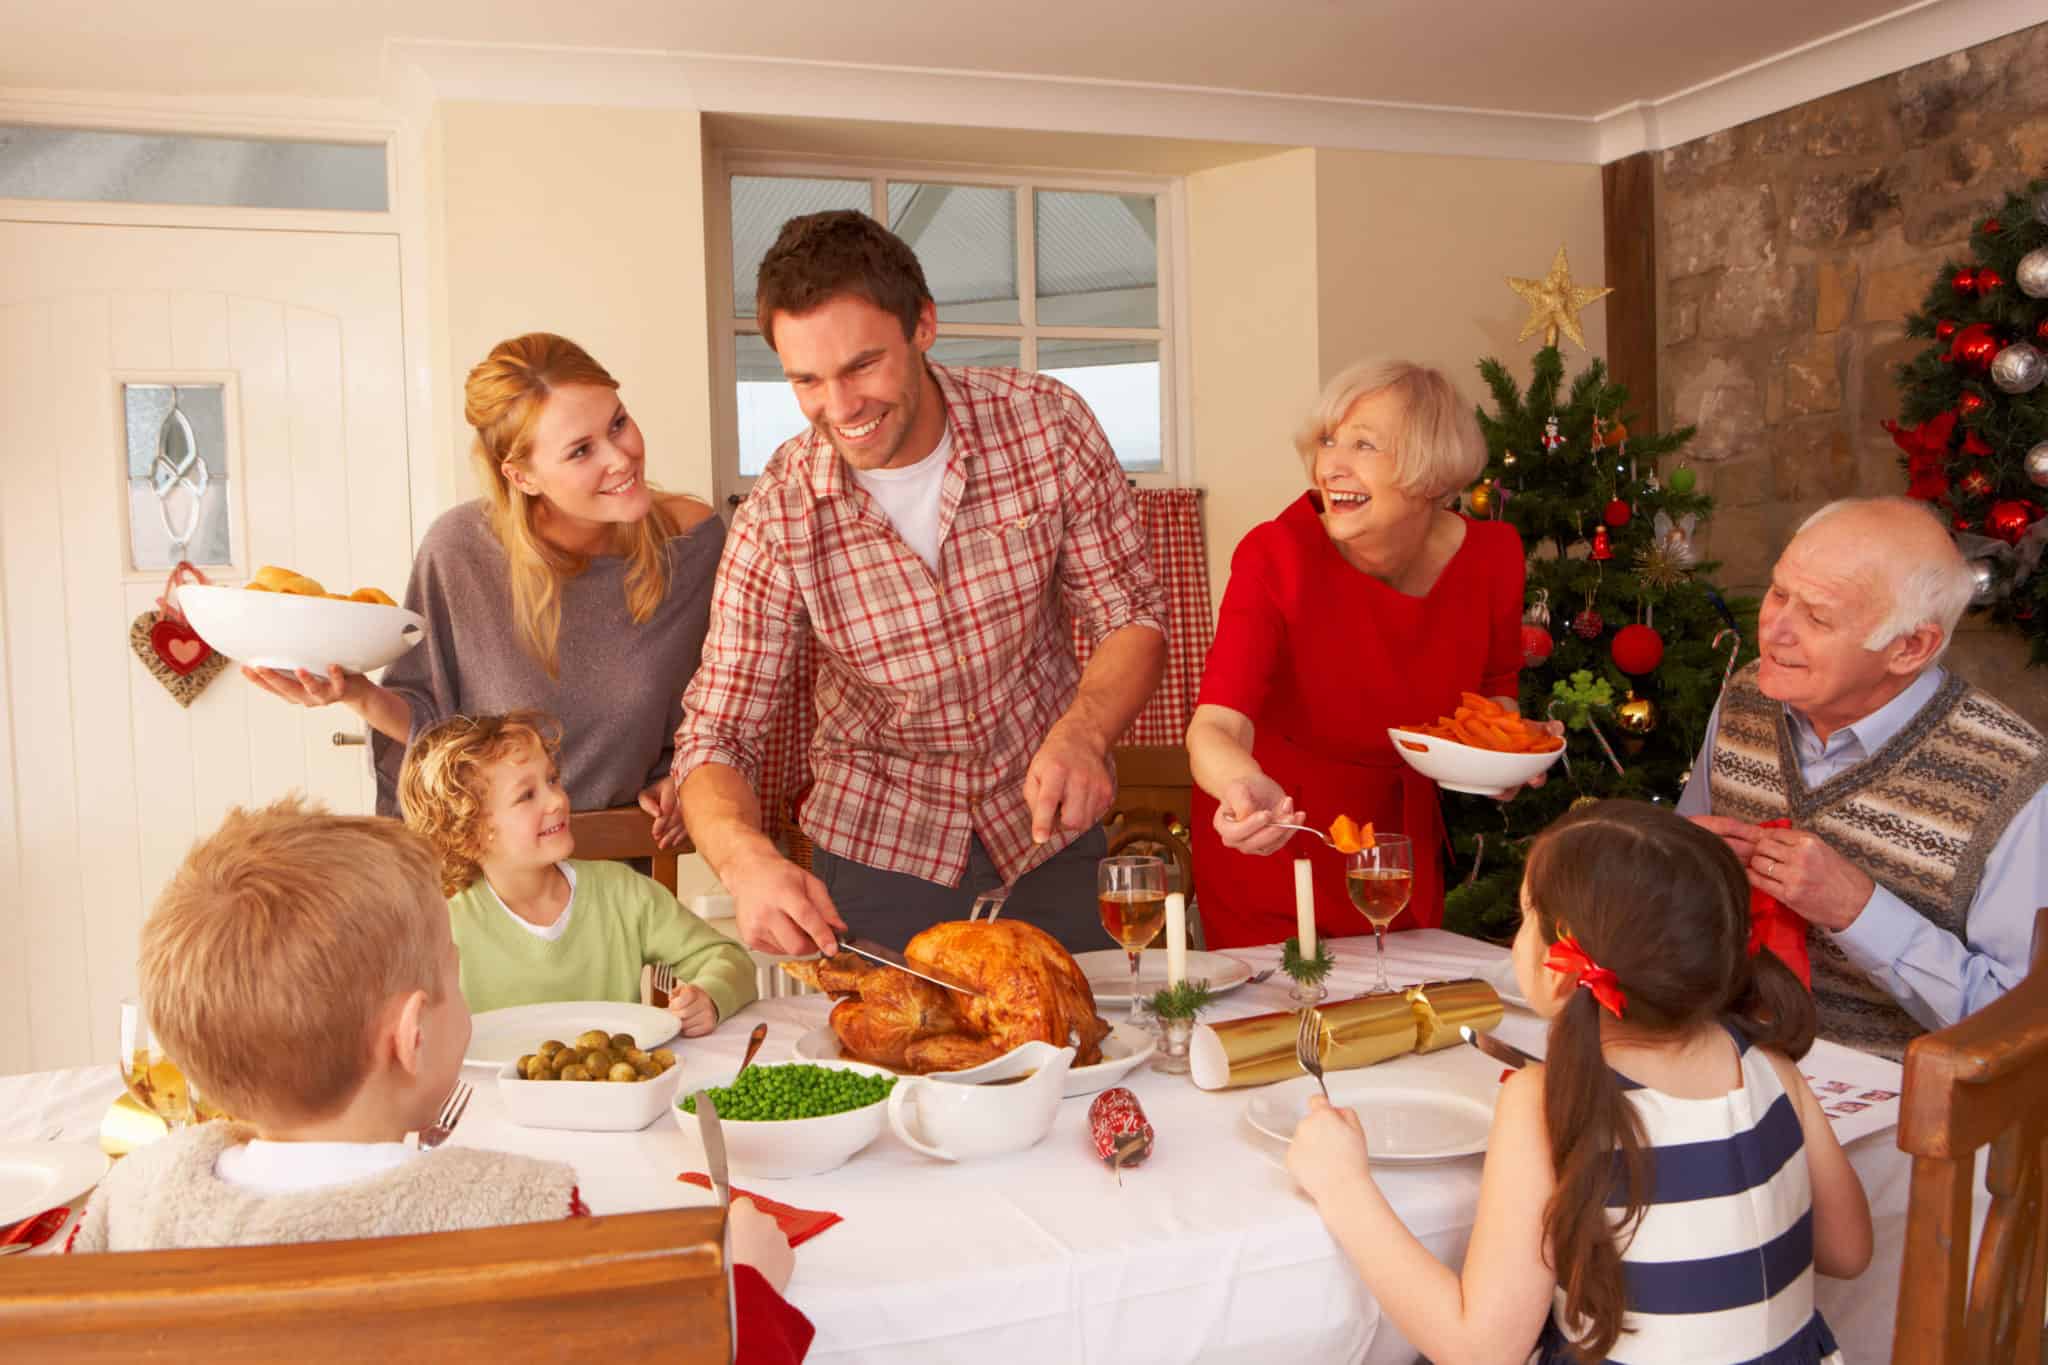 Сценарии в семейном кругу. Семья за столом. Семья за праздничным столом. Рождество в кругу семьи. Семейные традиции.